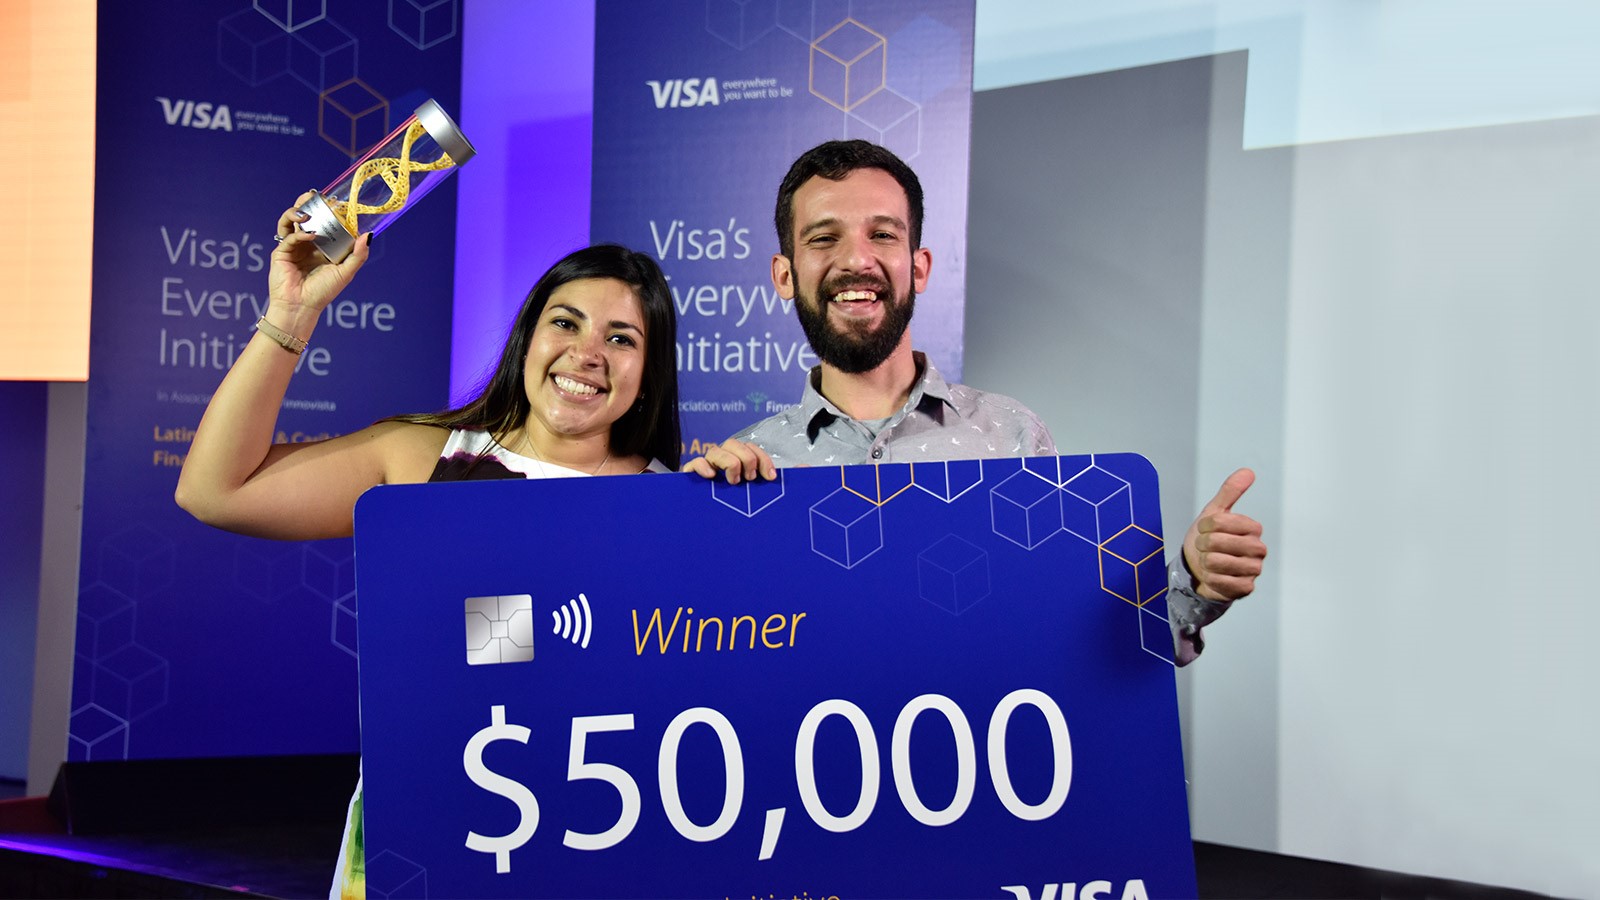 Este año Visa Everywhere Initiative será un competencia mundial. Por eso, ahora es más fácil que nunca para las startups de la industria de pagos competir por USD 100,000 en premios.